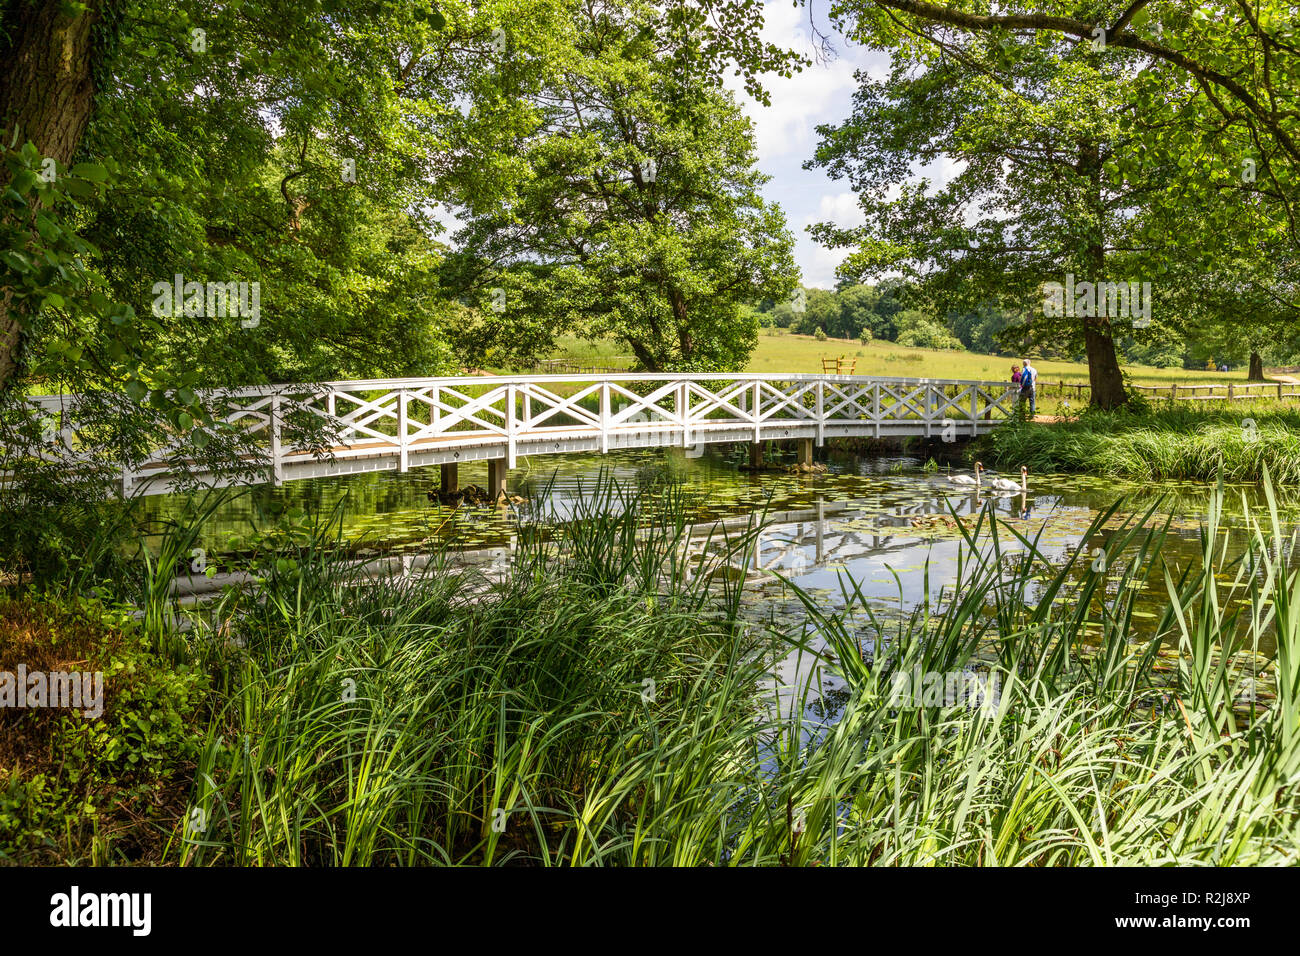 Le nouveau pont de chêne à Stowe Gardens, Buckinghamshire UK Banque D'Images